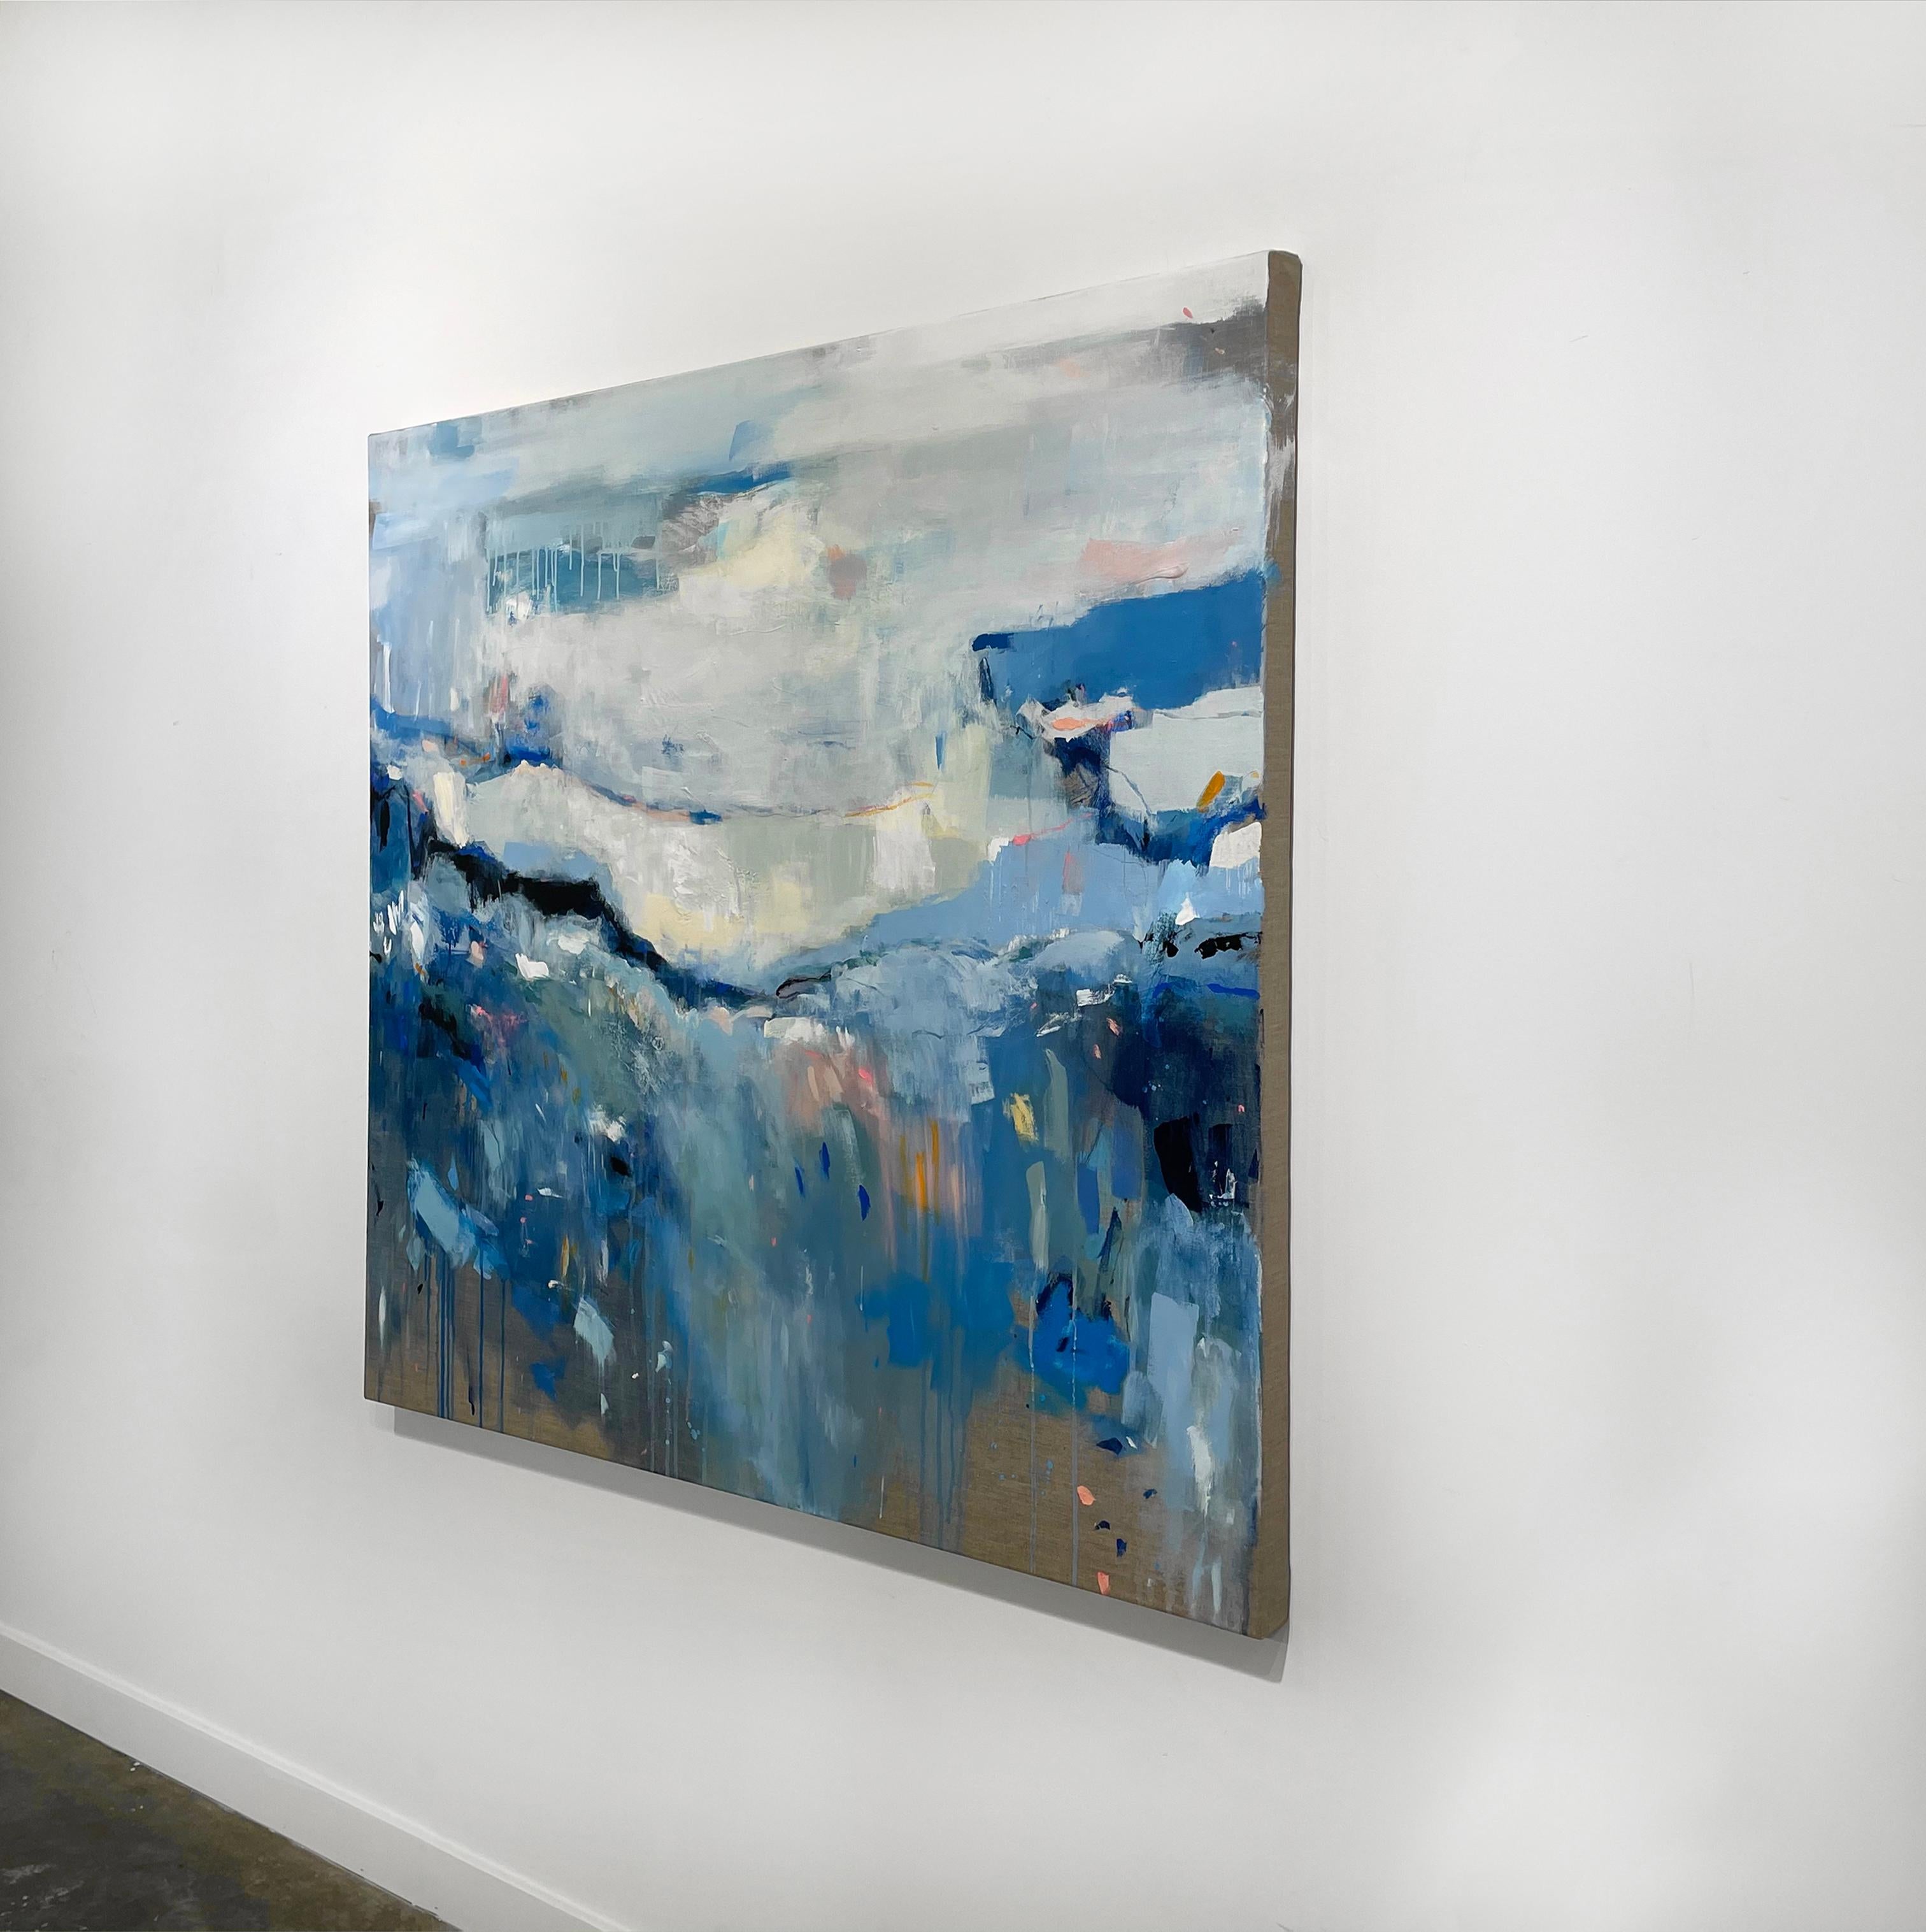 Dieses zeitgenössische abstrakte Gemälde von Kelly Rossetti ist mit gemischten Medien auf Leinen gemalt. Die kühle blaue Palette mischt verschiedene Blautöne und -nuancen mit hellerem Creme und Off-White, mit tiefen, fast schwarzen Akzenten und